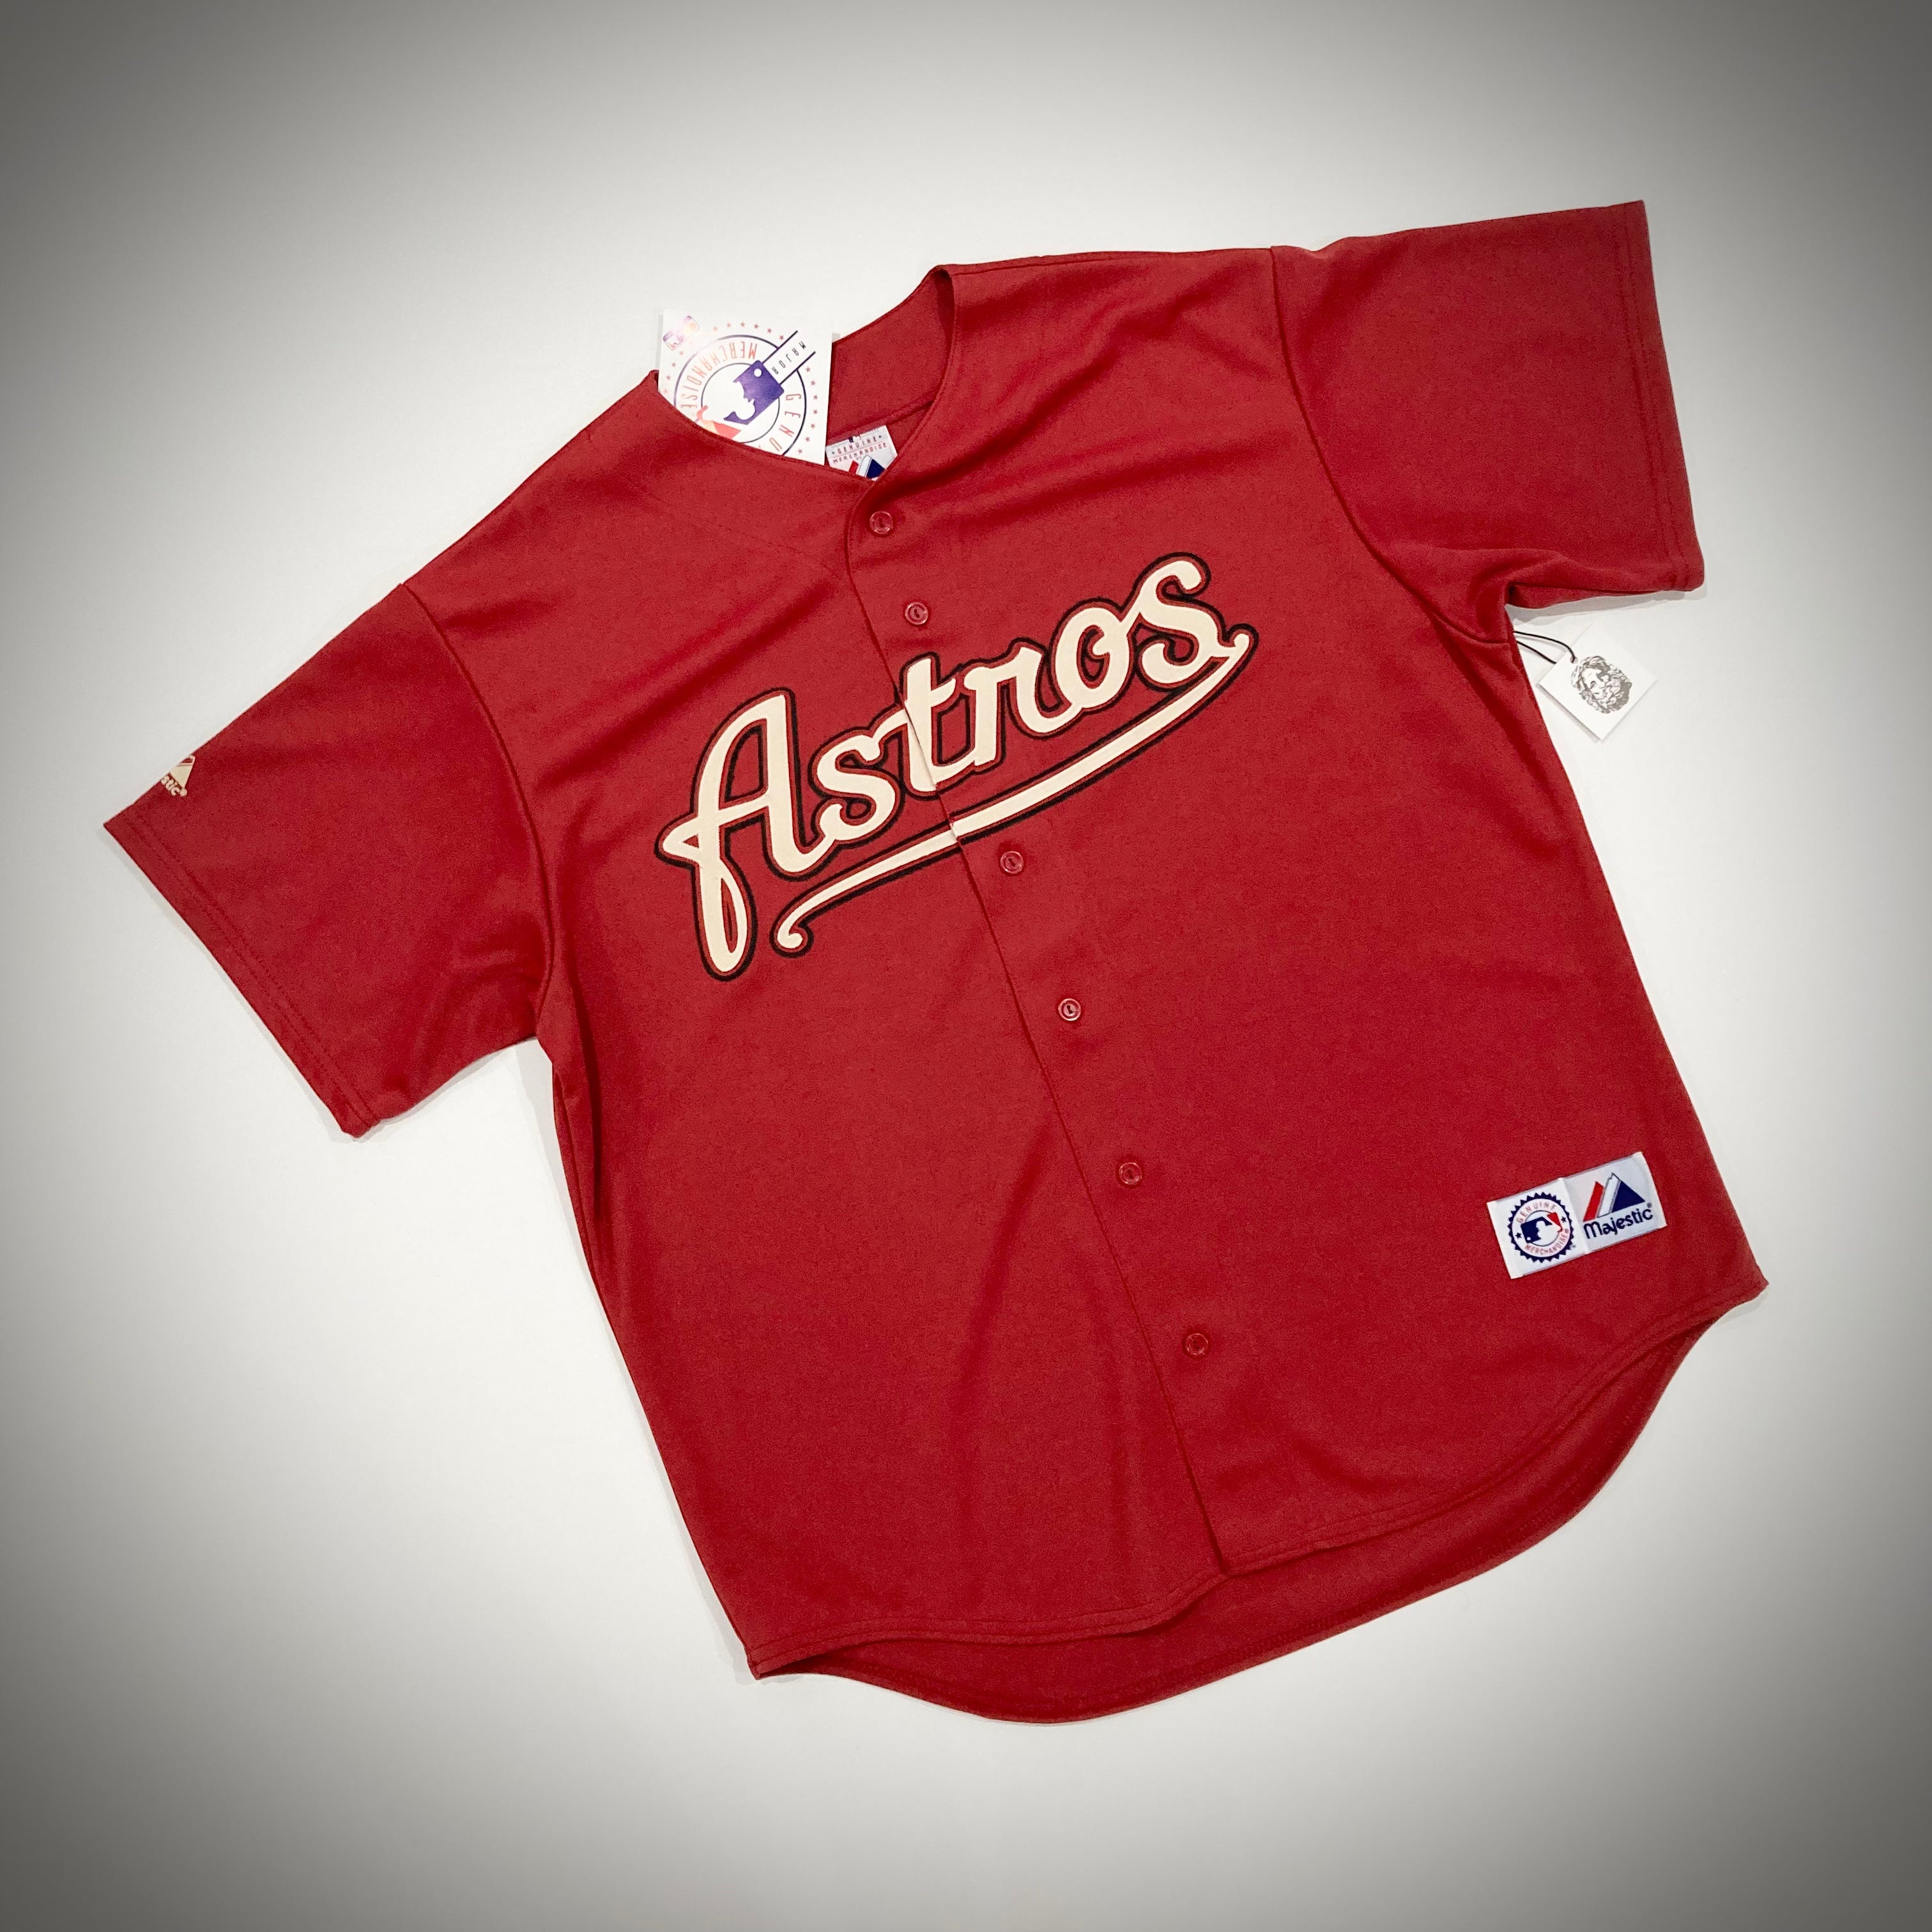 Astros Jerseys